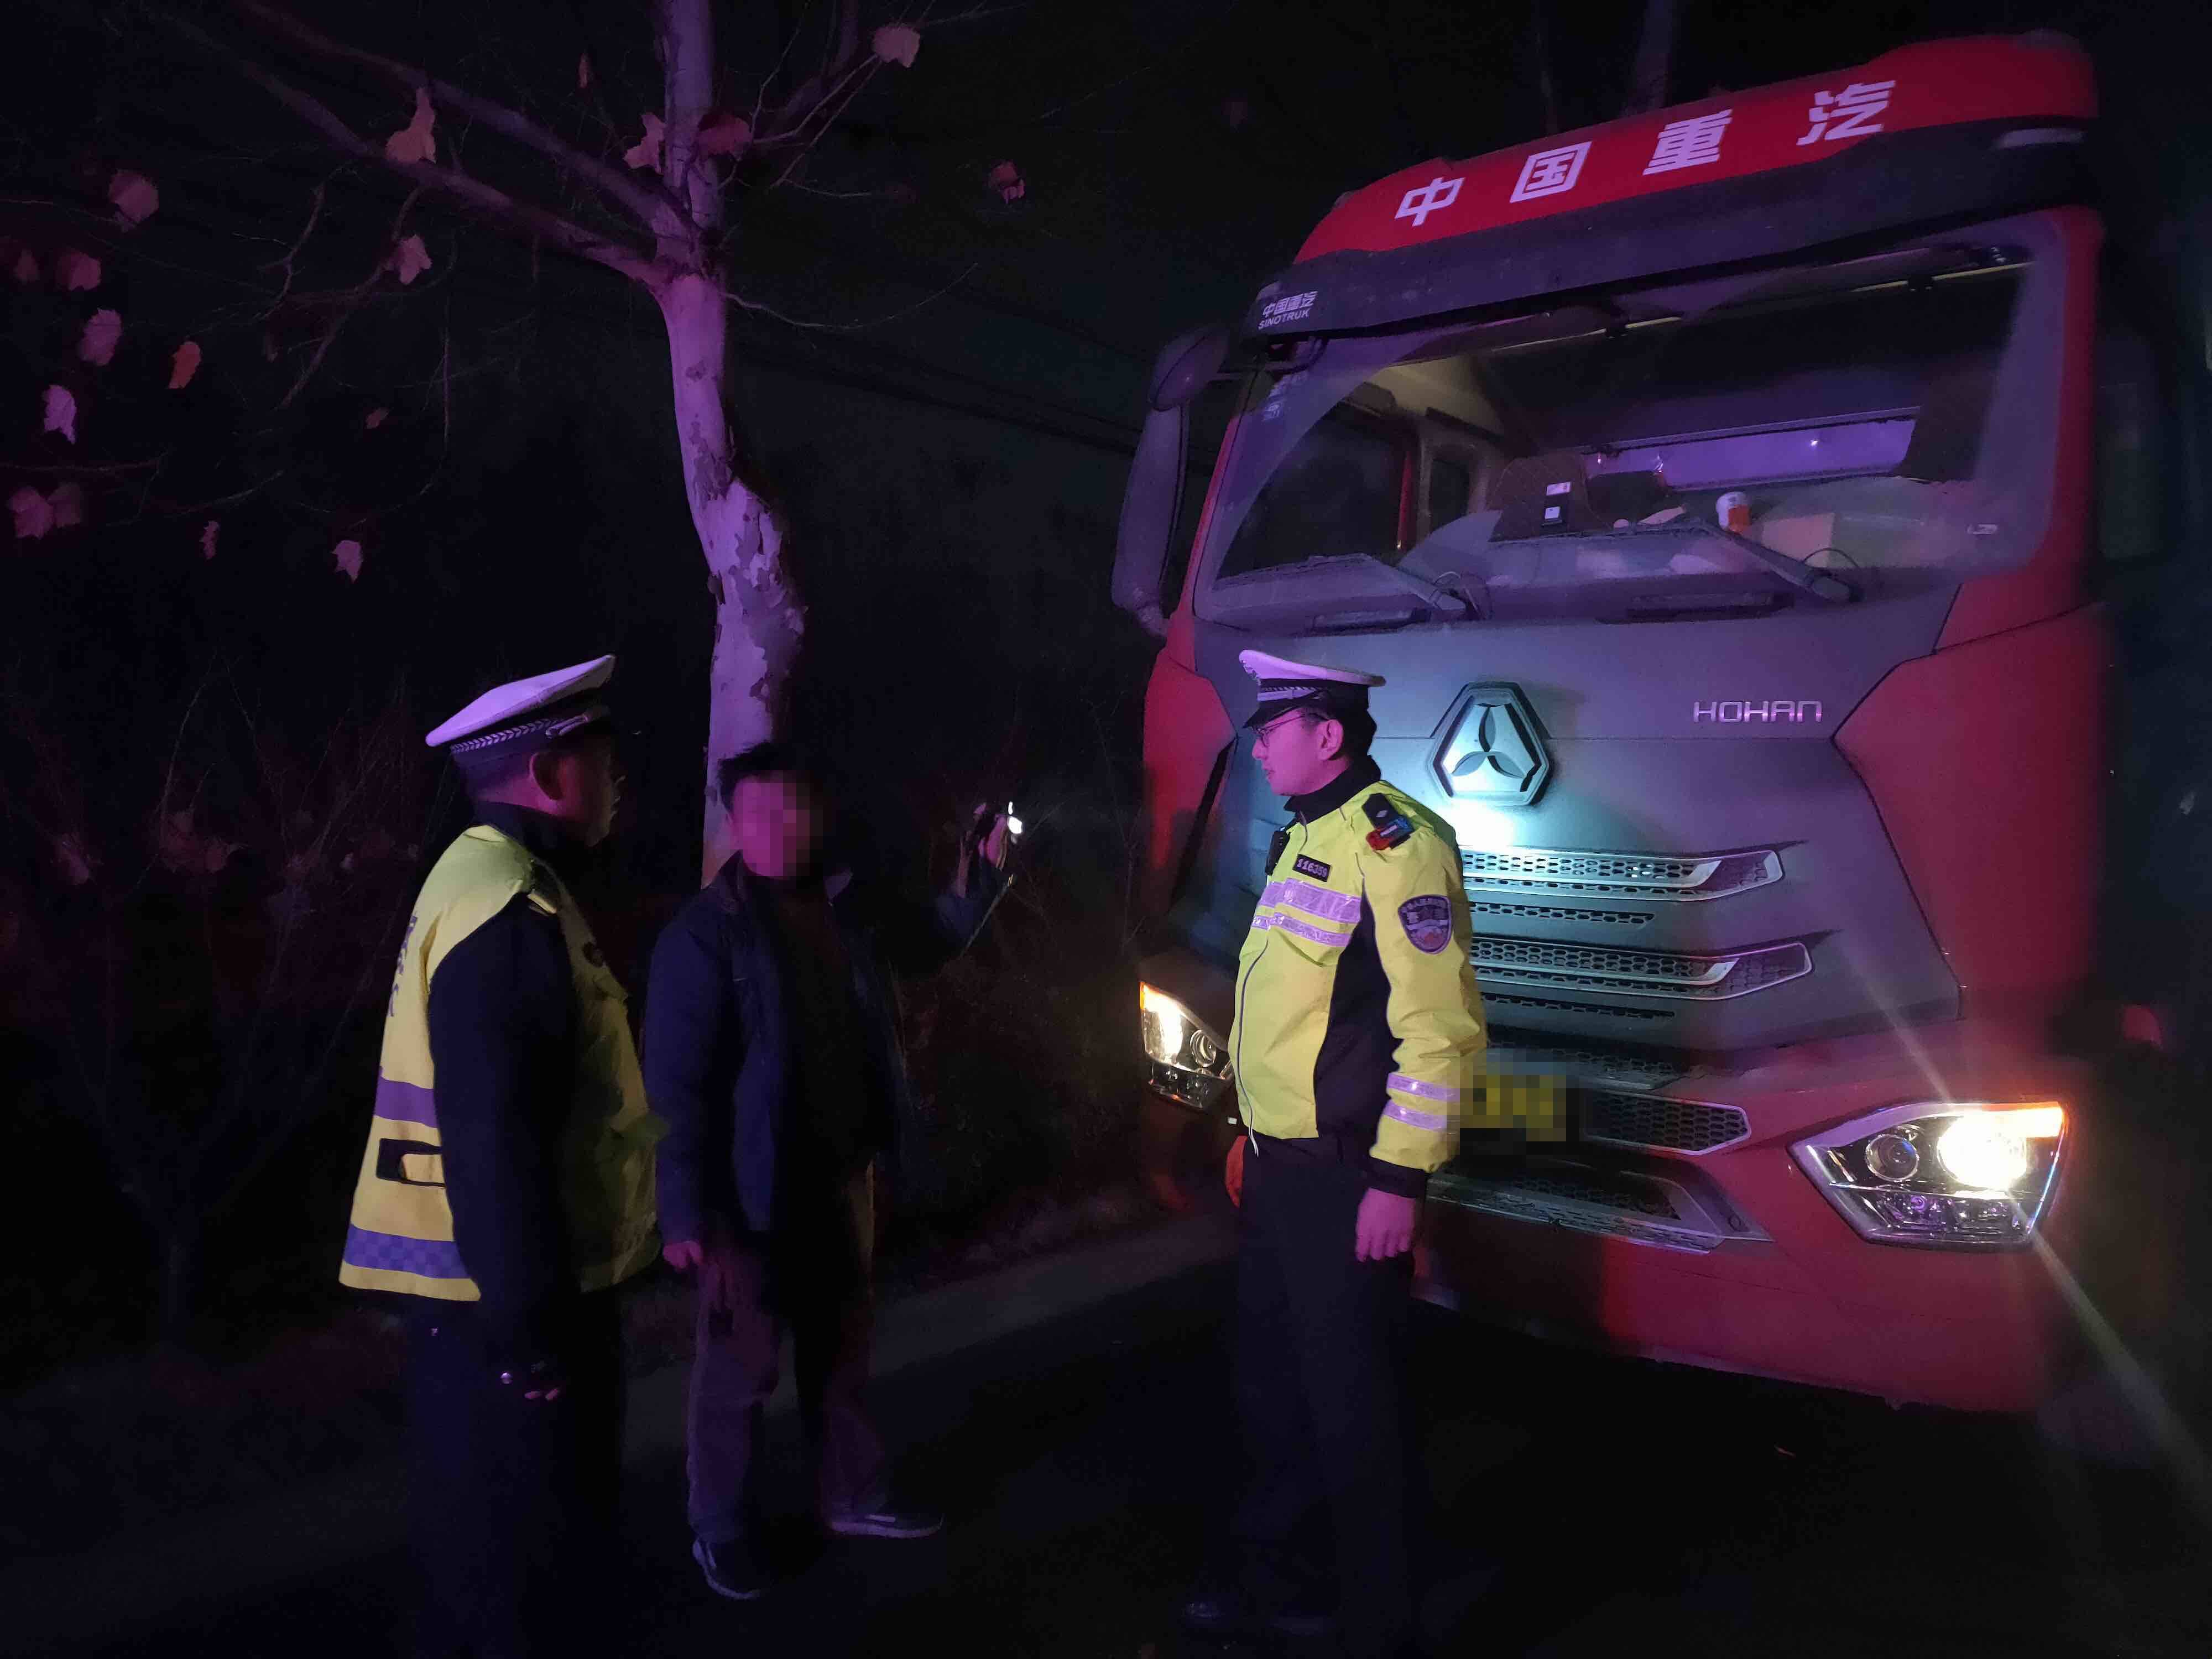 移动污染源整治在行动 淄博桓台交警回马枪查处超载货车7台